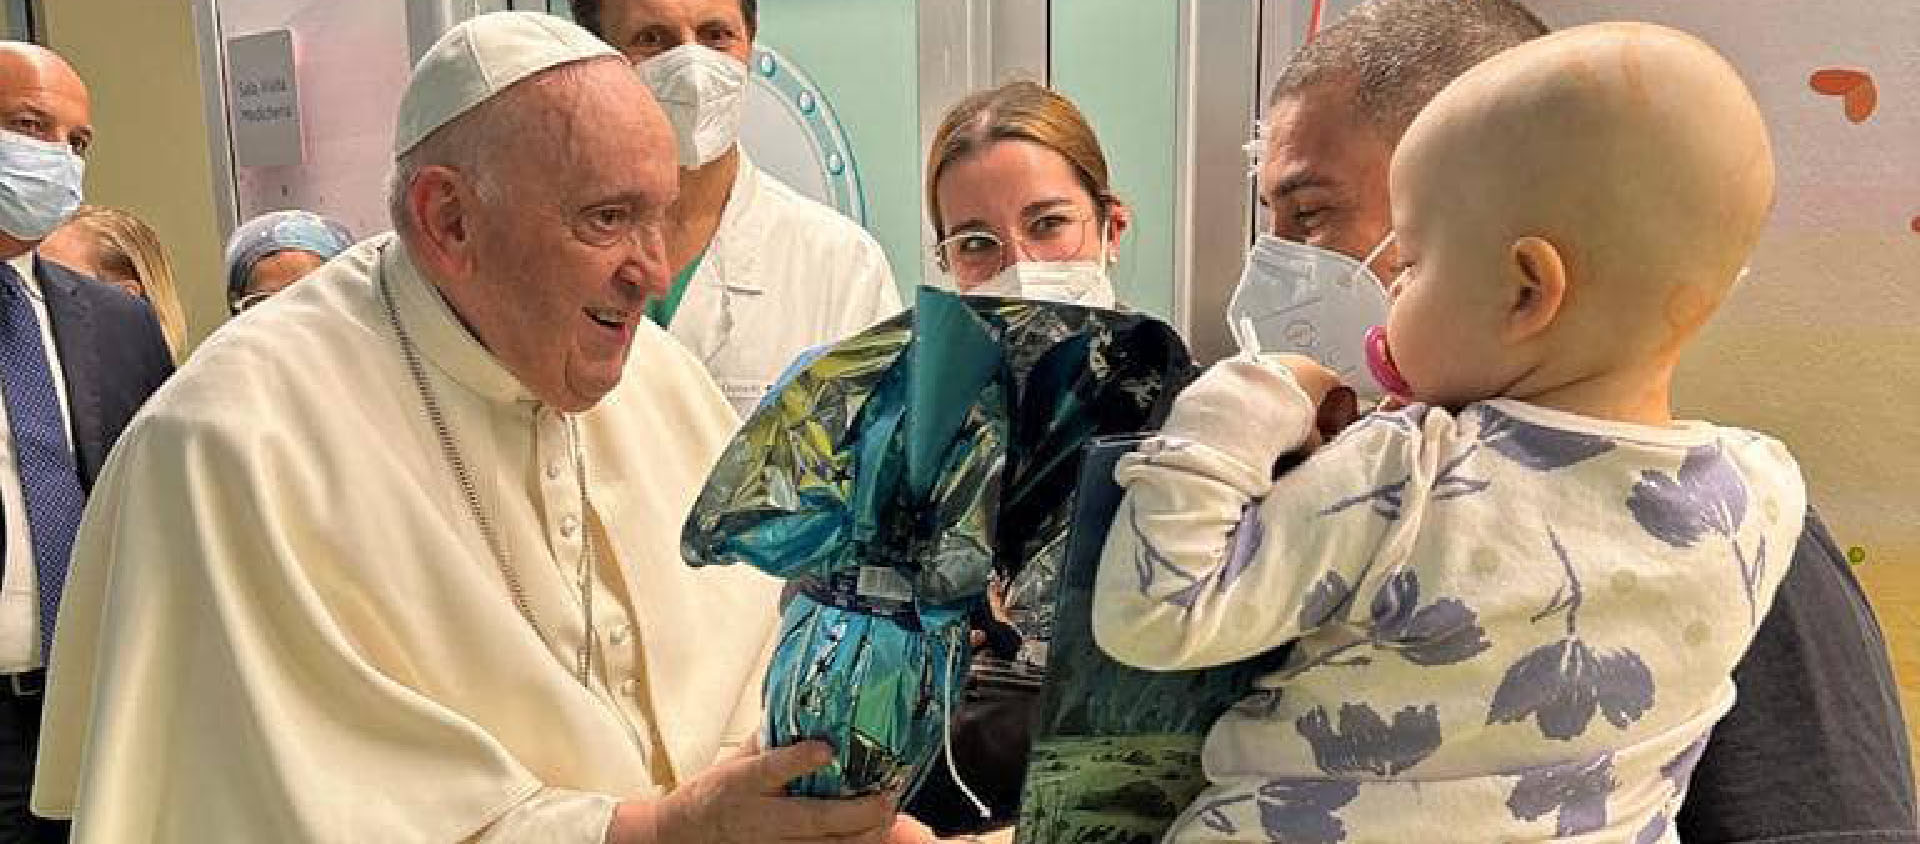 Le pape a offert des œufs de Pâques aux enfants et a baptisé un nouveau né | © Vatican News